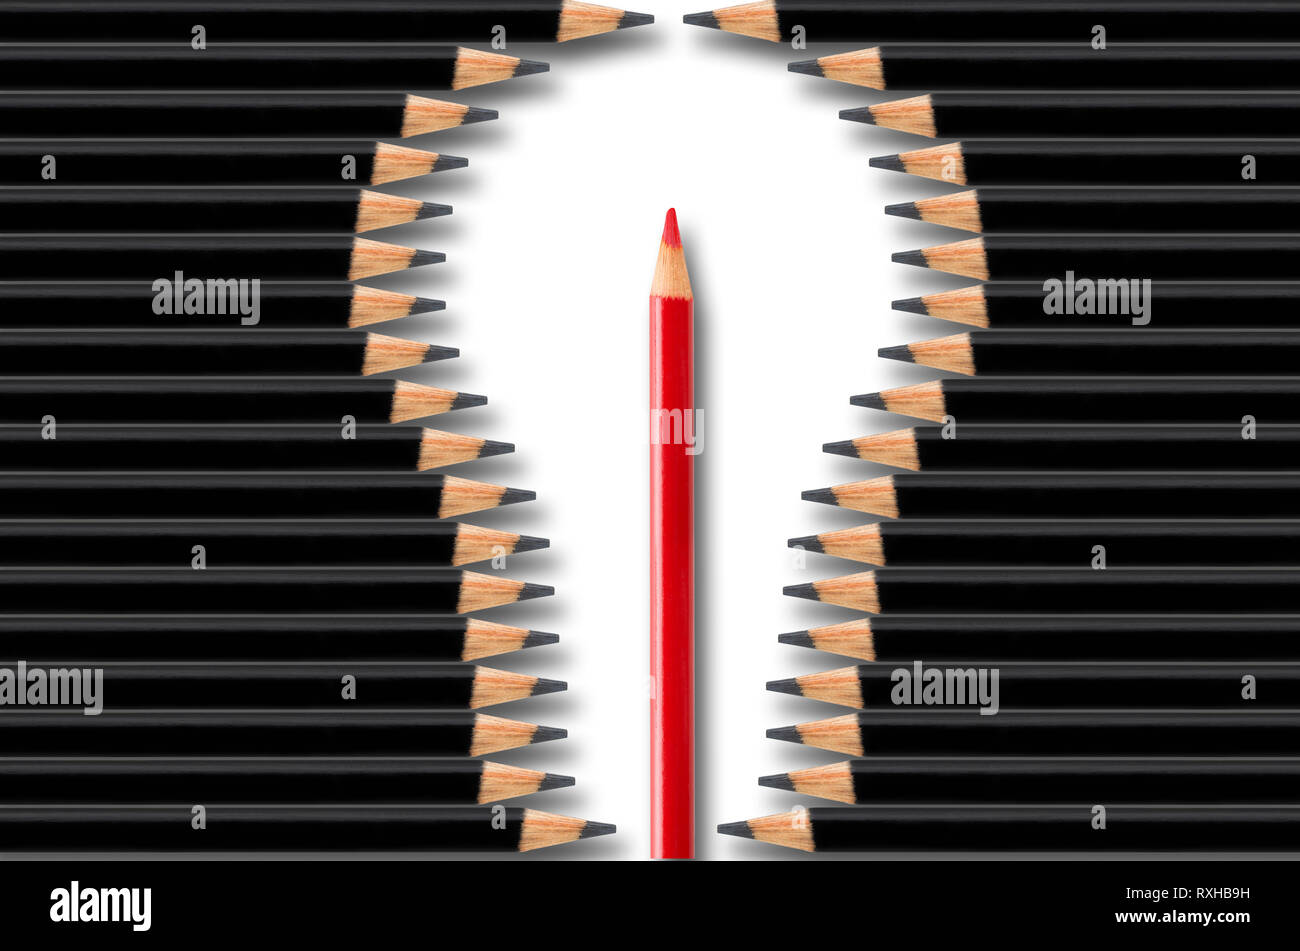 Kreativität, Idee oder Brainstorming Business Konzept, Glühbirne Form durch schwarze Bleistifte mit roter Stift gebildet in der Mitte, minimalen Begriff flatlay Stockfoto